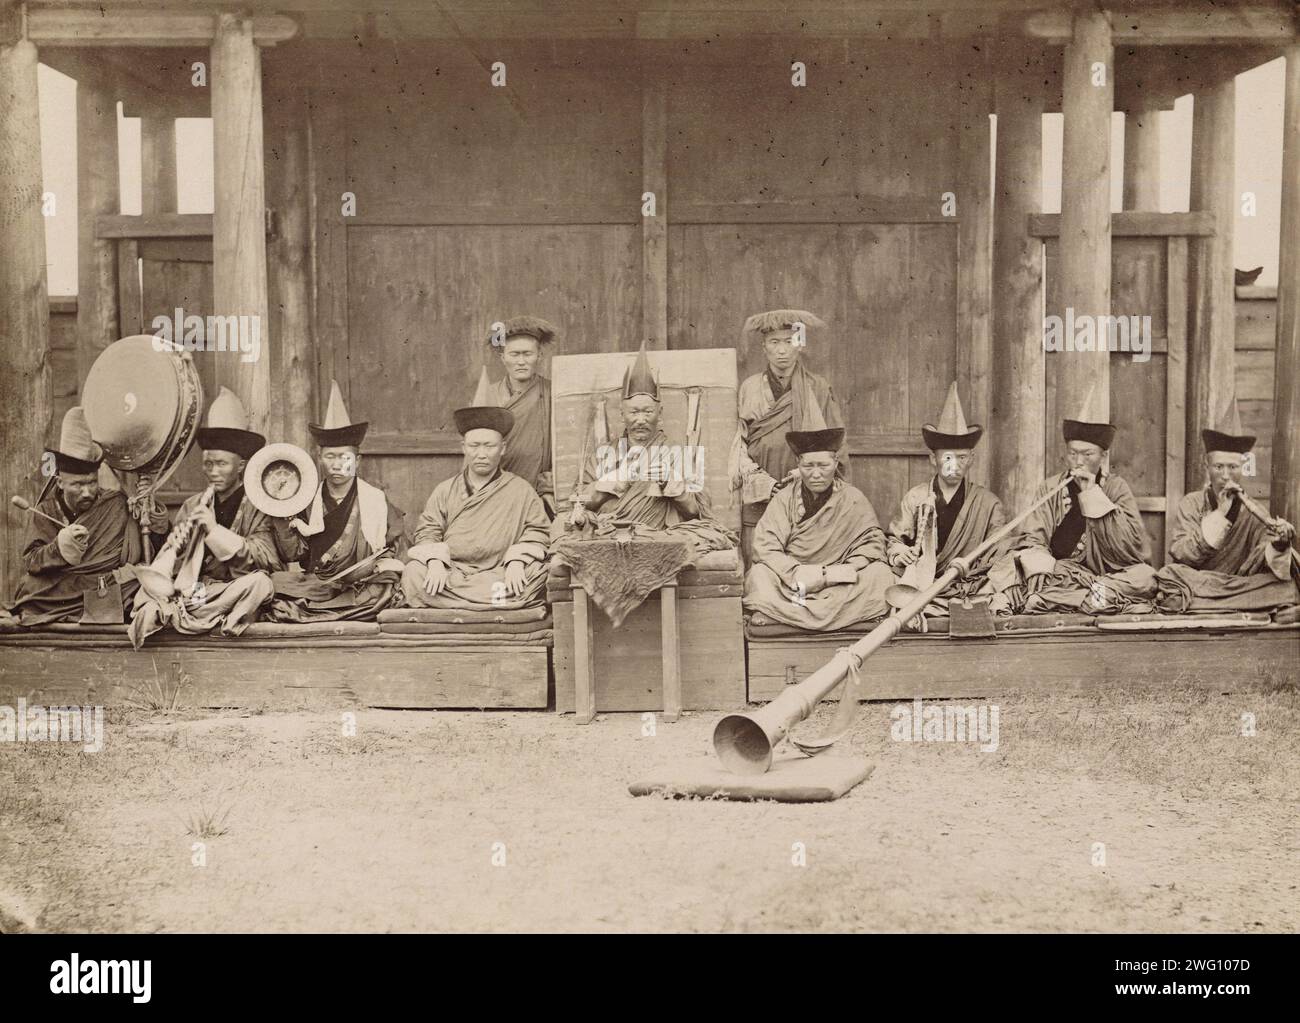 Gusinoozersk Datsan Khamba Lama (Abt (1)), Lamas und lama-Musiker. Während des Gottesdienstes hält Khamba Lama einen „Honkho“ in der Hand, das heißt eine Glocke und einen Vachir (2), und schüttelt sie, wenn Zaubersprüche gelesen werden. 1886 war Dan der Khamba Lama., 1880–1889. Aus einem Album mit Fotos und Drucken, das Höhepunkte der Stadt Irkutsk und ihrer Umgebung im späten 19. Jahrhundert zeigt. Irkutsk war zu dieser Zeit das Zentrum des sibirischen kulturellen und intellektuellen Lebens. Zu den gezeigten Gebäuden gehören das Museum of Regional Studies, eine technische Schule, ein Waisenhaus, Hotels und die Kirche o Stockfoto